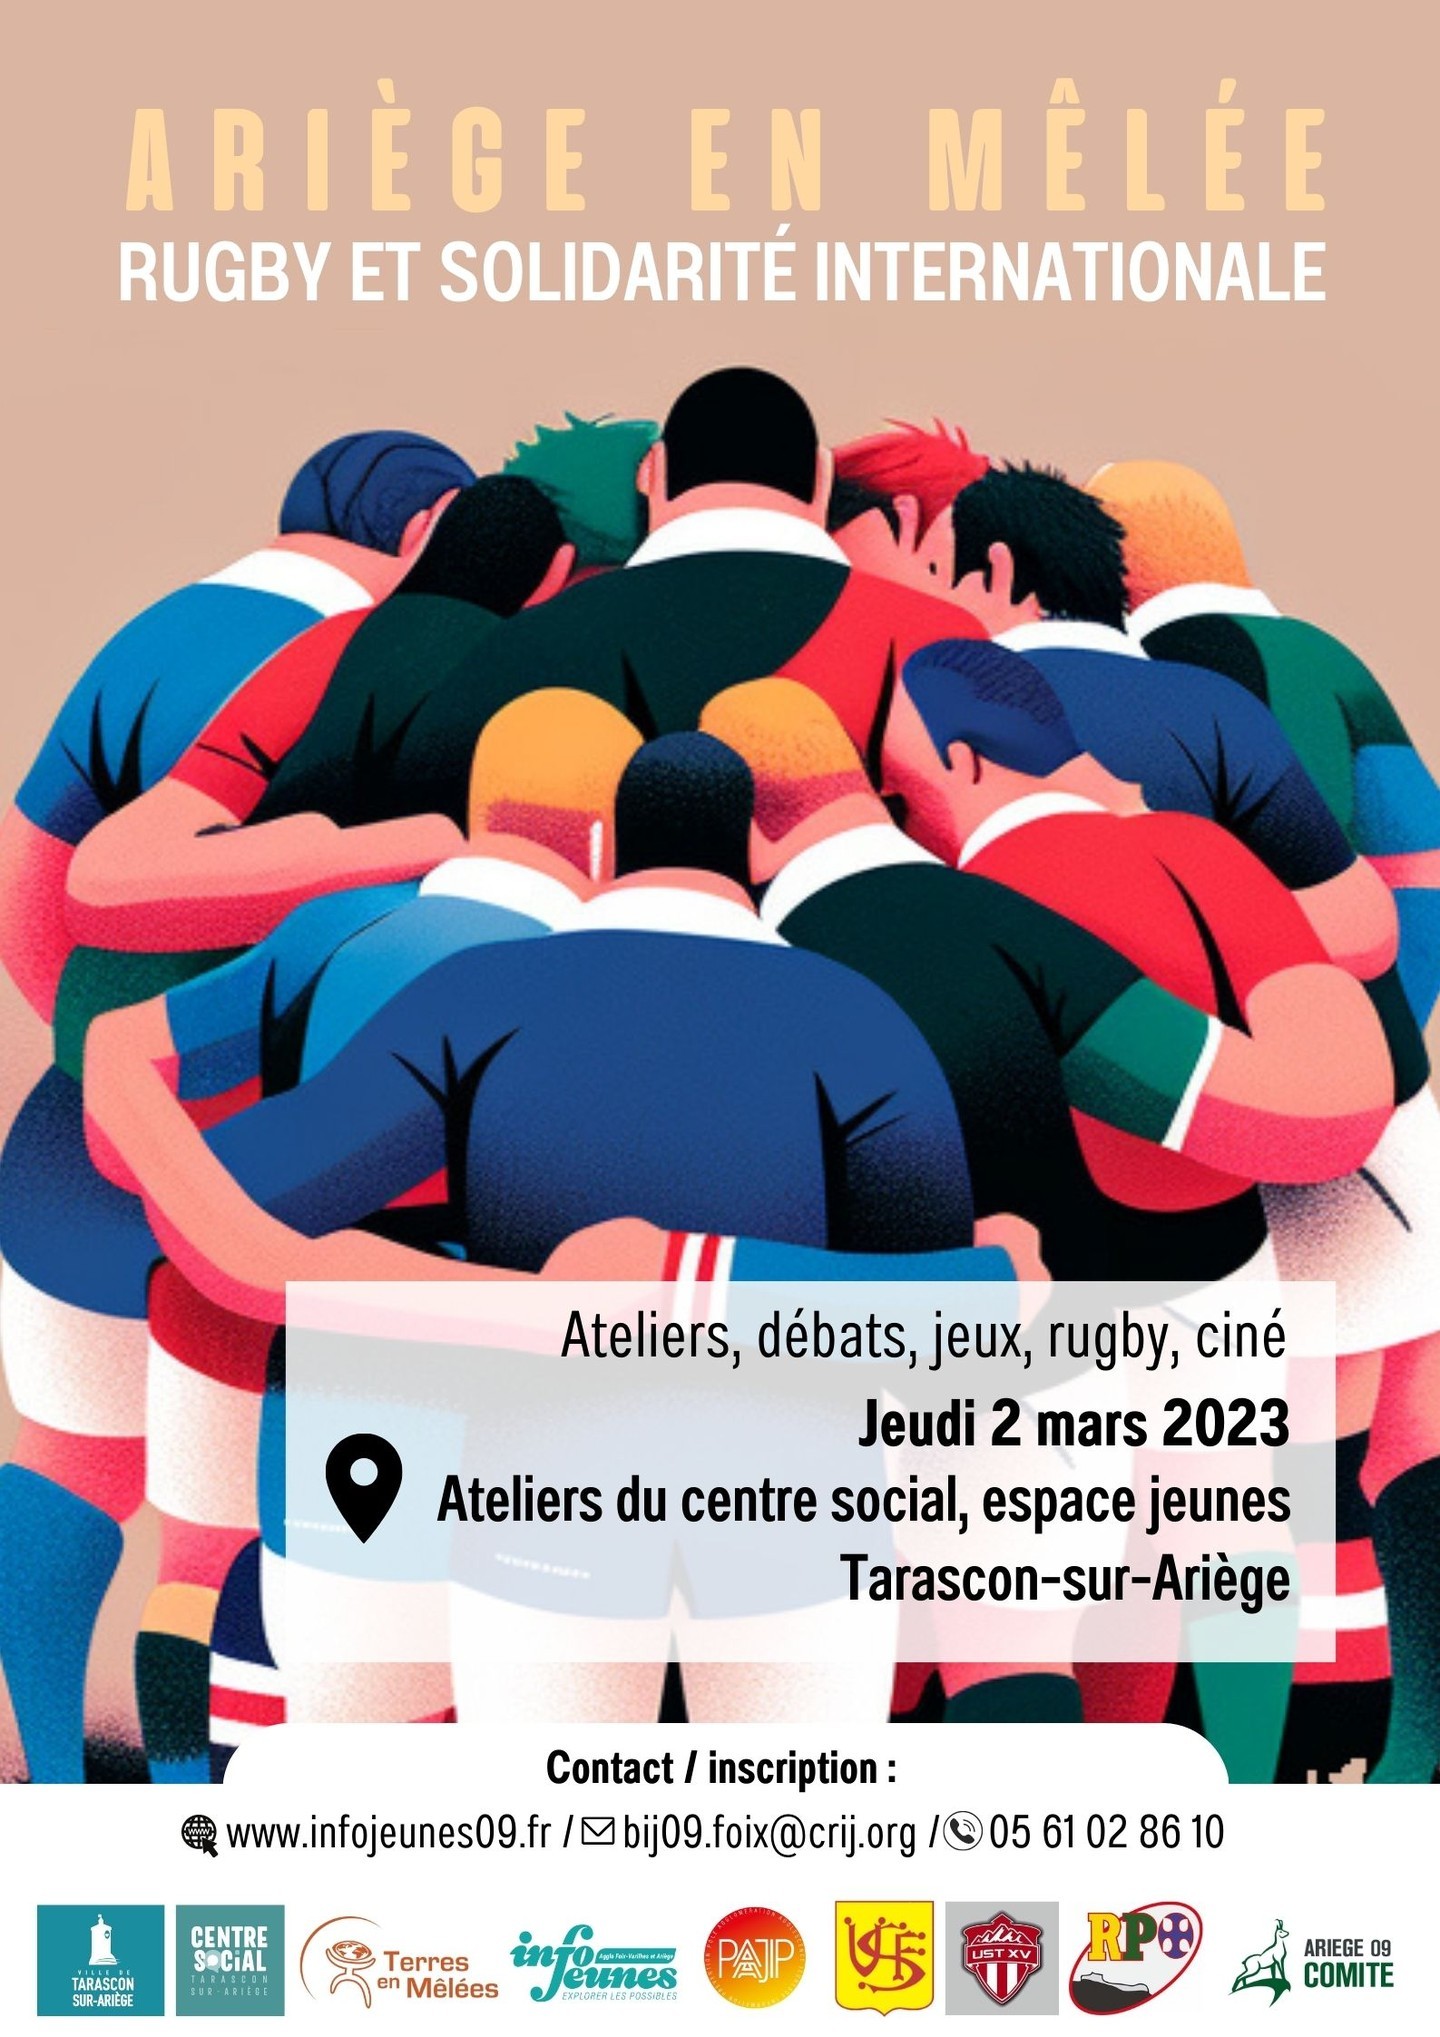 Une journée autour du rugby et la solidarité internationale est proposée le jeudi 2 mars 2023 à Tarascon-sur-Ariège (ex-MJC). Au programme : ateliers rugby, jeux, ciné-débat.
Gratuit, sur réservation à ce lien : https://docs.google.com/spreadsheets/d/1LaQ9MP91hLMqP2UEKgcrUk8UC2nh6nGYucu5wjaM7FQ/edit#gid=0

Programme détaillé :
09h30 : Accueil autour d’un petit-déjeuner
10h00 : Jeux et ateliers autour des valeurs du rugby, l’écologie et de la découverte de l’autre.
12h00 : Repas au Club-House de l’UST
13h45 : Ateliers rugby et rugby à toucher
16h30 : Gouter
18h00 : Ciné-débat «La jeune fille et le ballon ovale», de Christophe Vindis (2018), 52mn
19h15 : Cocktail